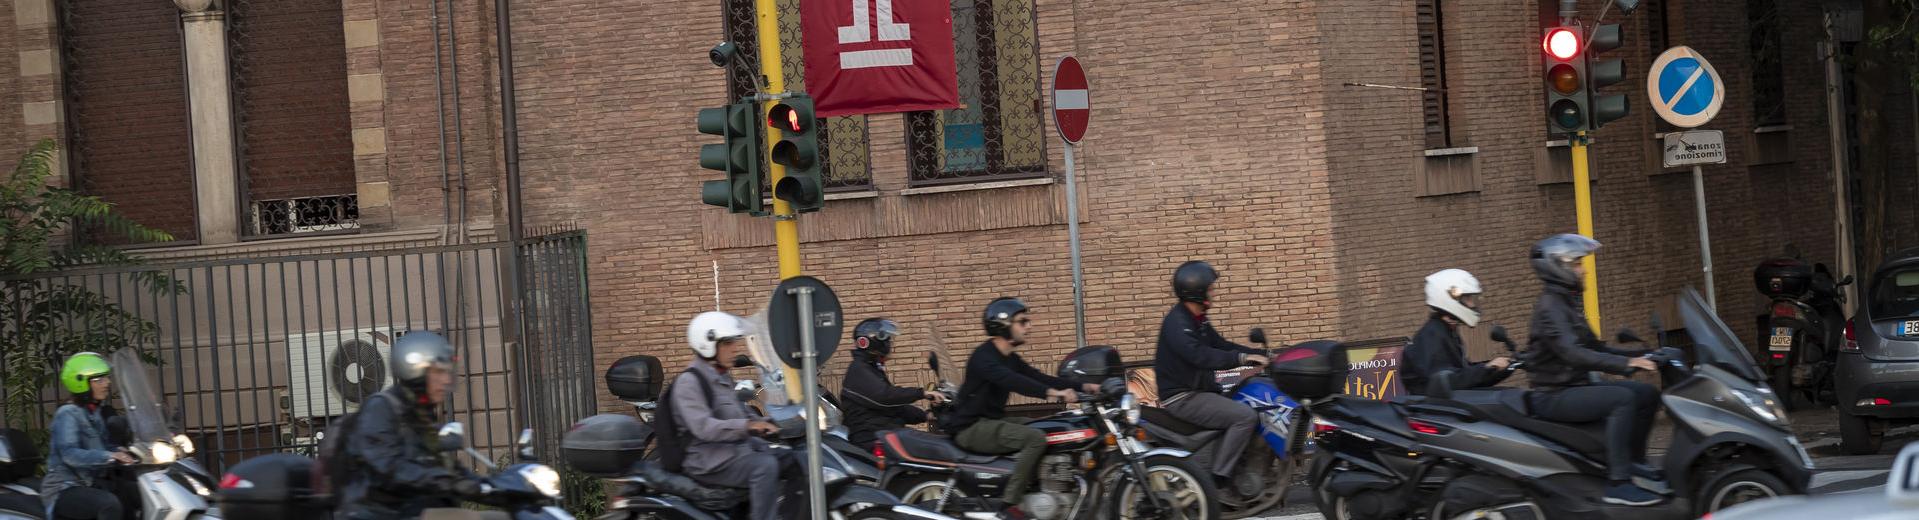 一群骑摩托车的人在罗马神庙附近的意大利街道上.